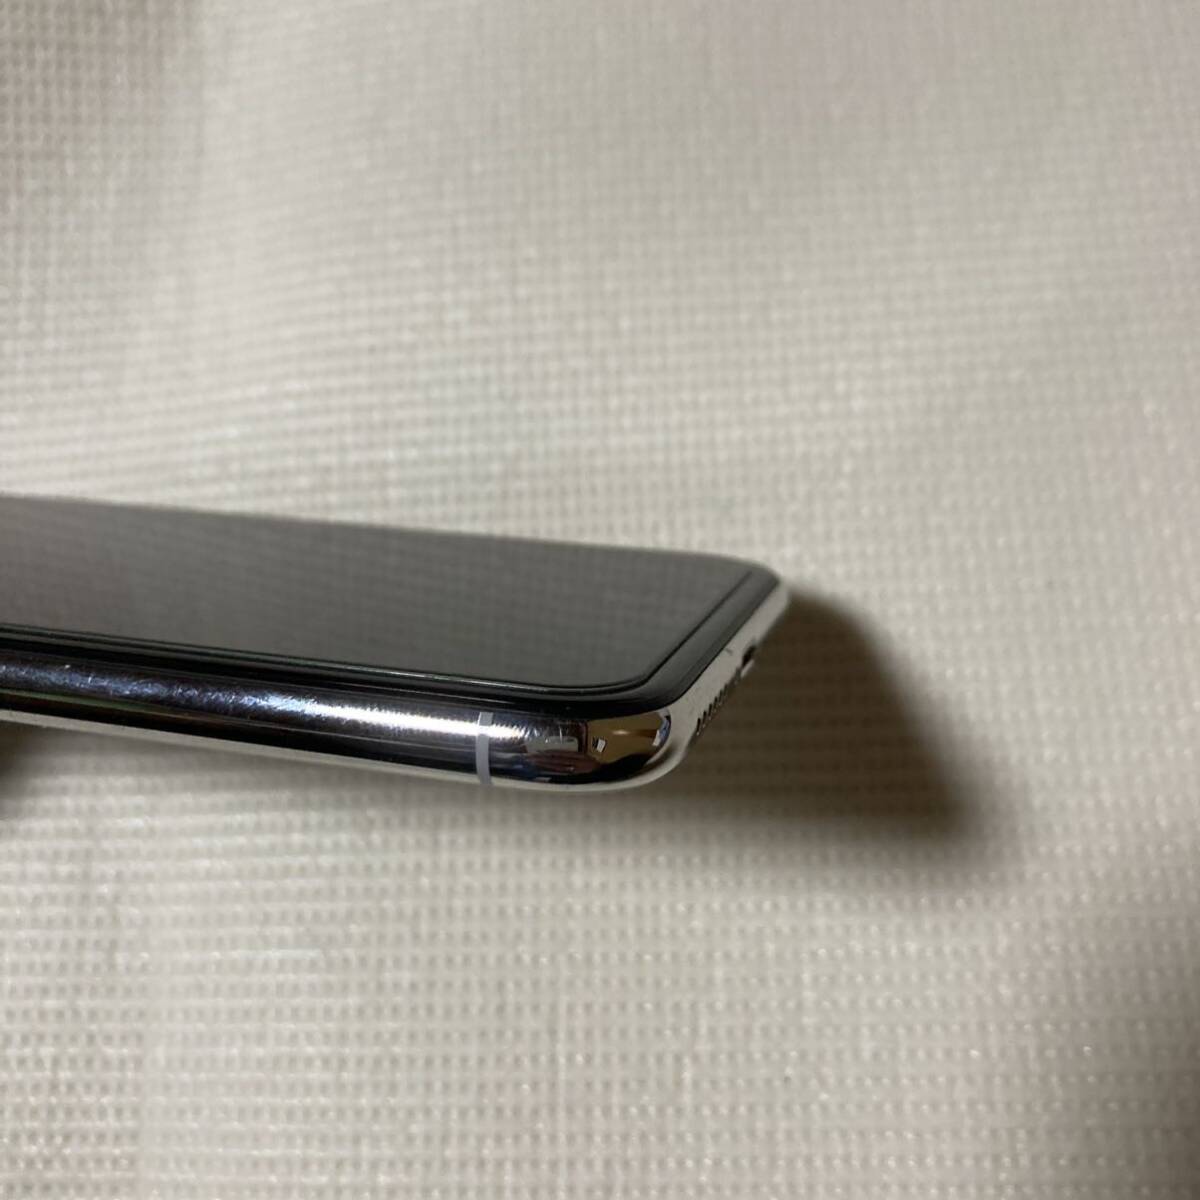 送料無料 SIMフリー iPhoneX 64GB シルバー バッテリー最大容量100% SIMロック解除済 付属品の画像4